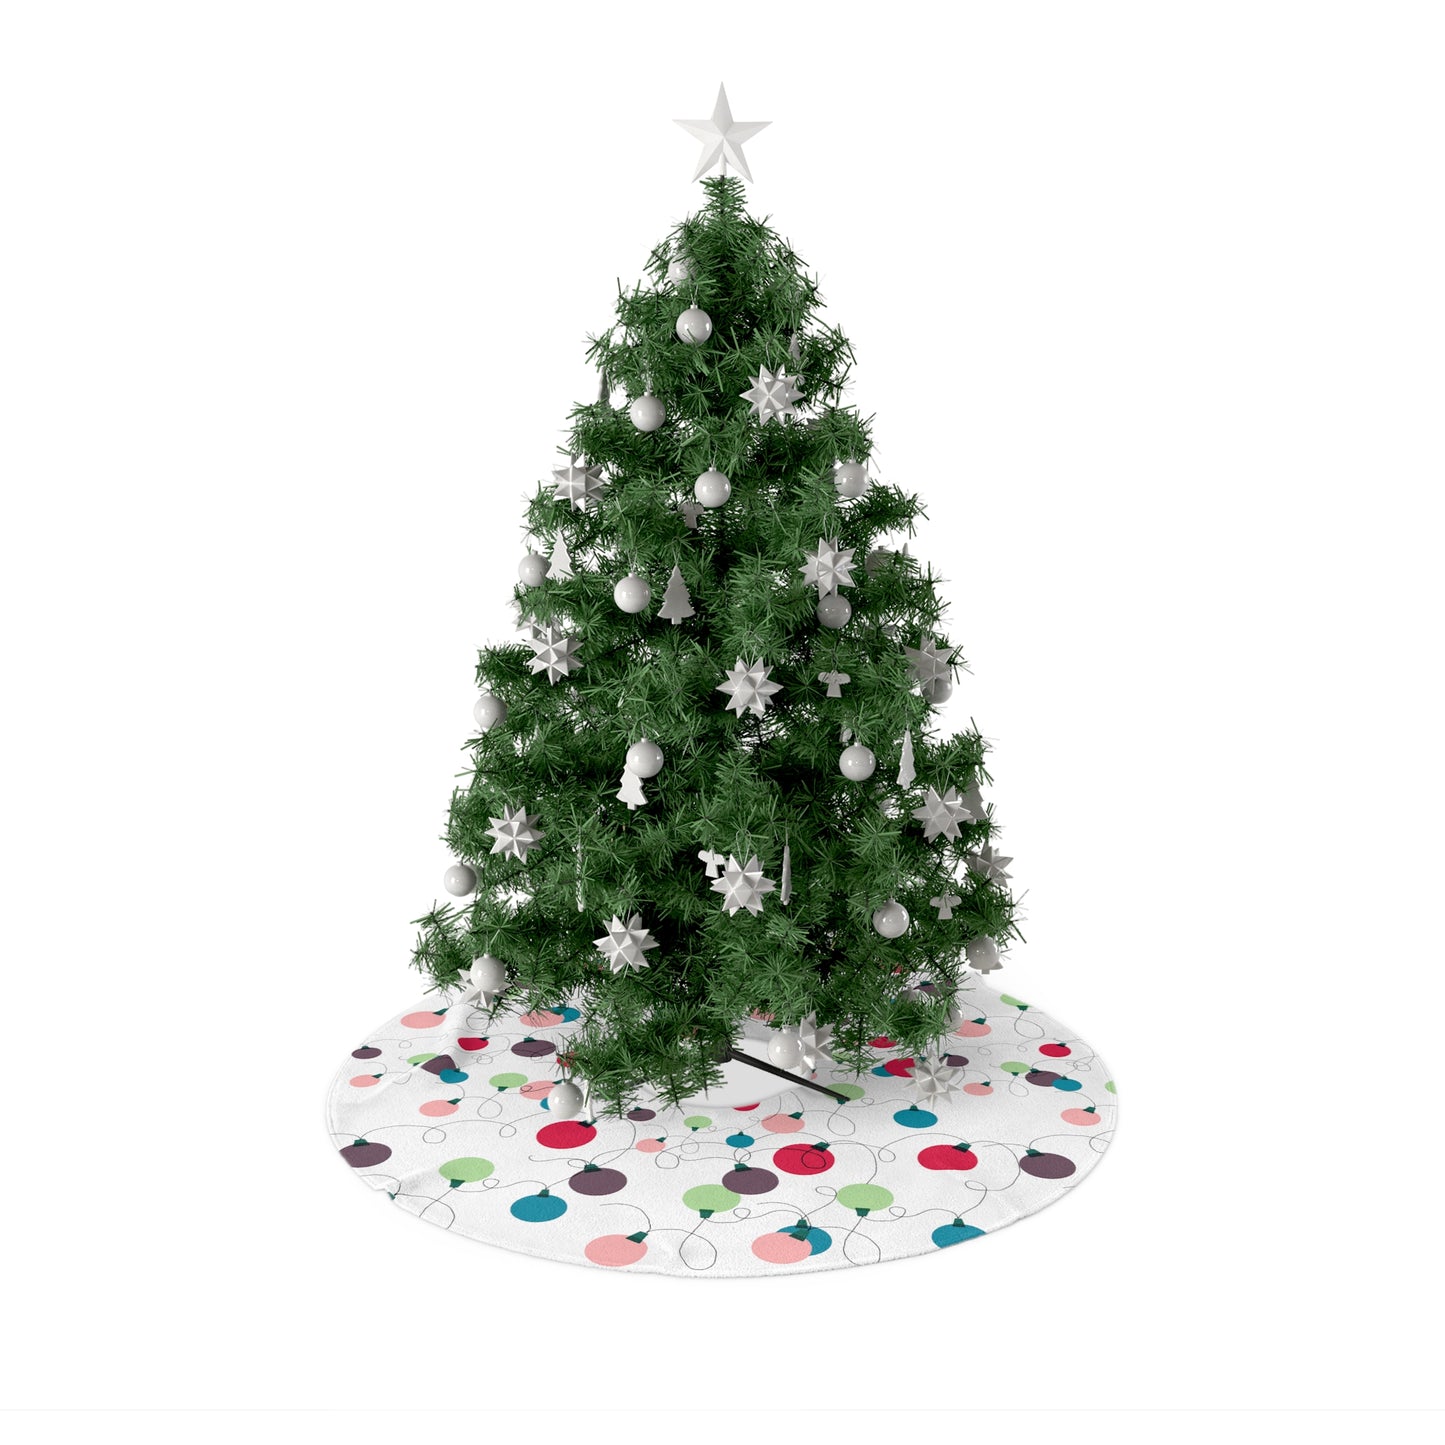 Christmas Lights Tree Skirt / Christmas Decor / Holiday Lights / Messy Lights Tree Skirt